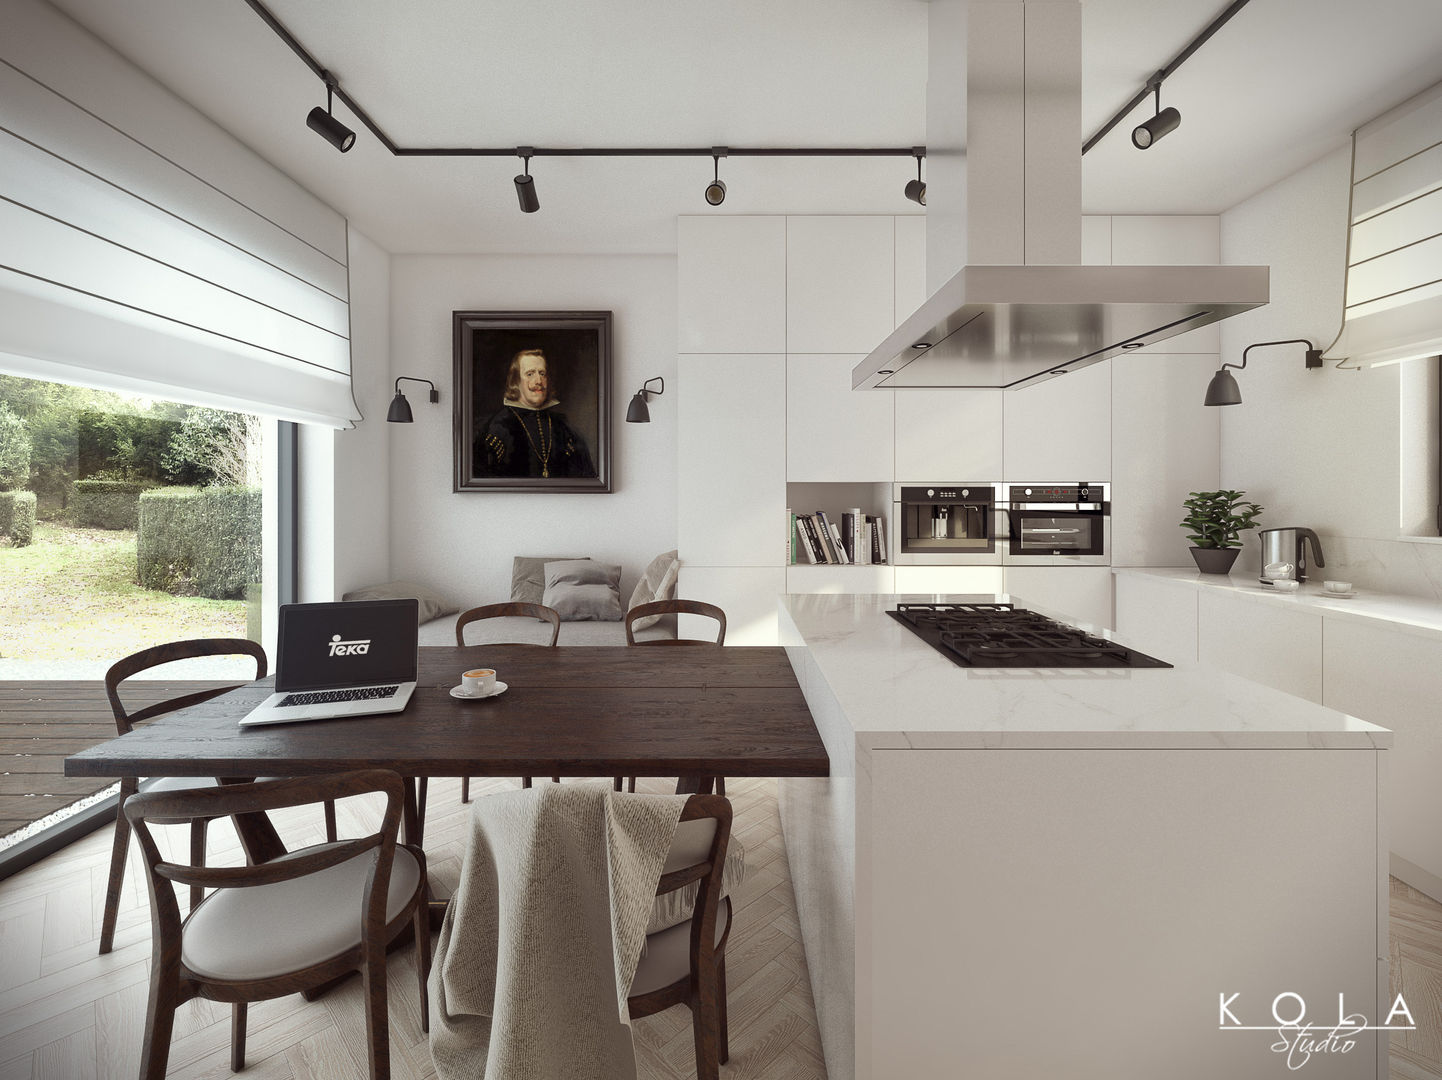 Eclectic kitchen / Kuchnia eklektyczna, Kola Studio Wizualizacje Architektoniczne Kola Studio Wizualizacje Architektoniczne مطبخ